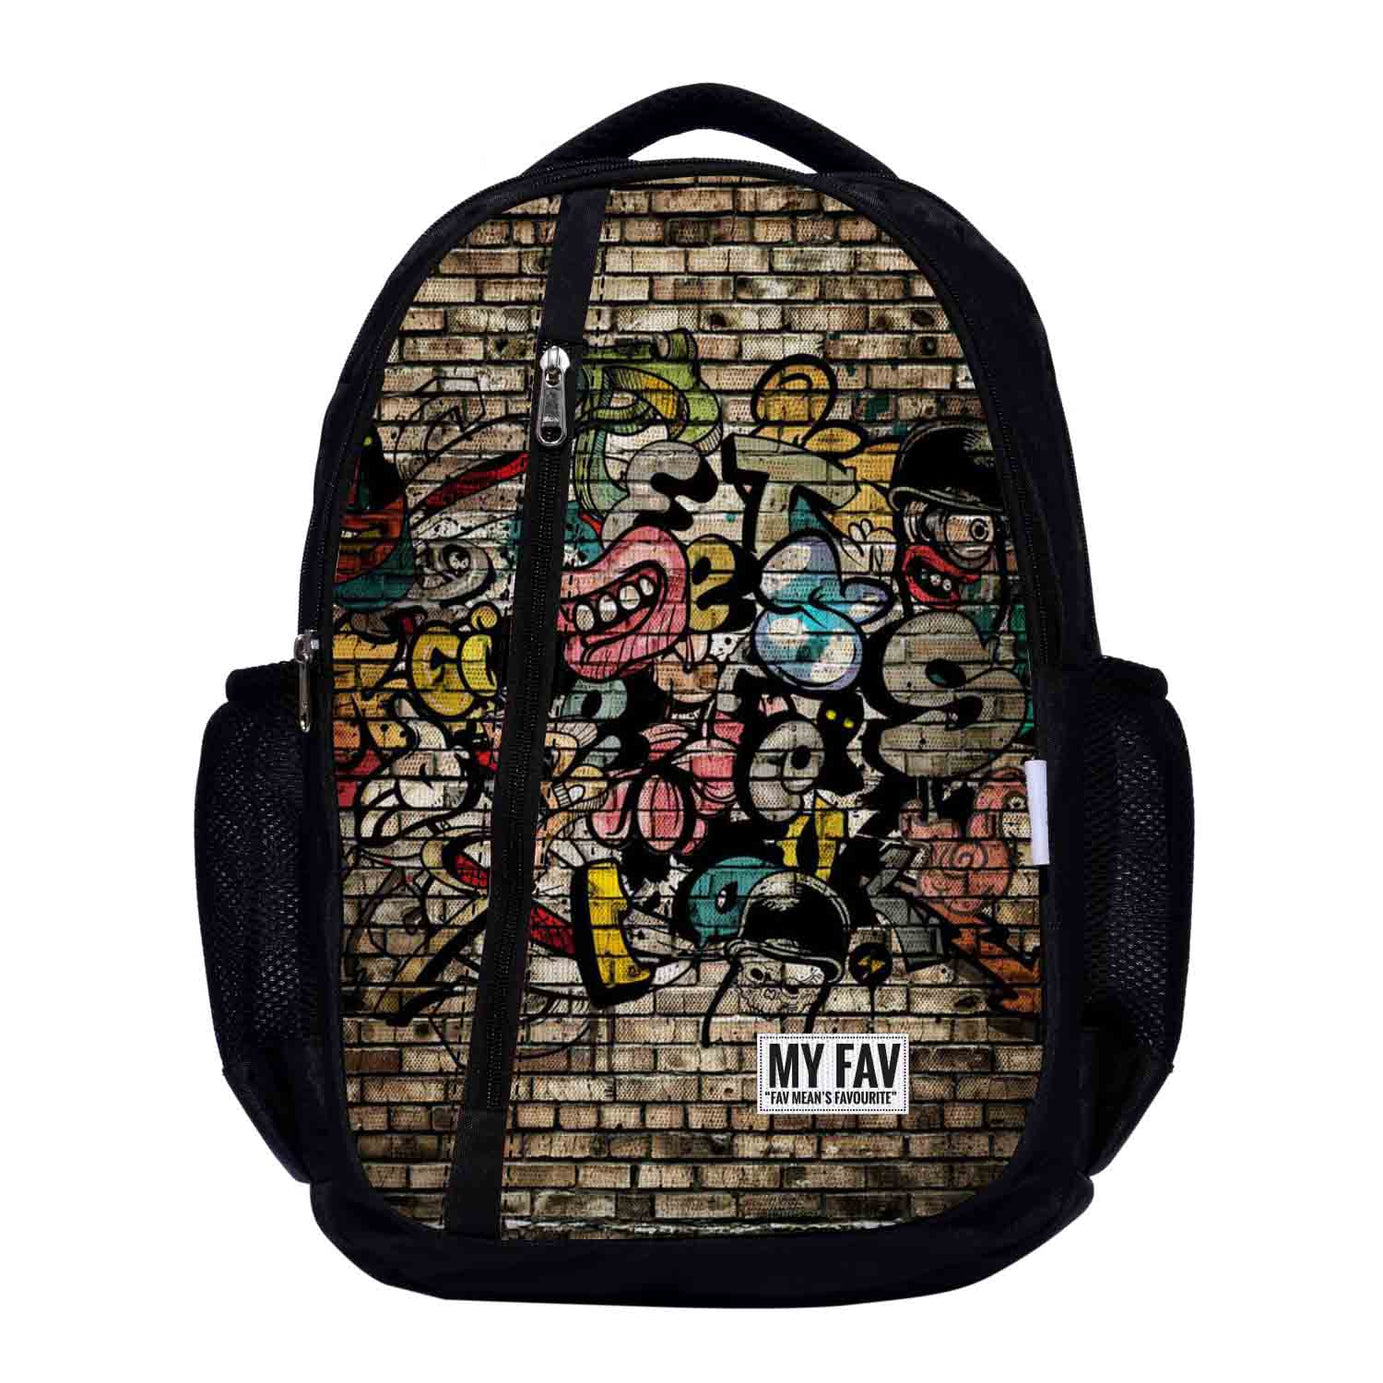 My Fav Wall Print Laptop Backpack For Men Women / School Bag for Boys Girls